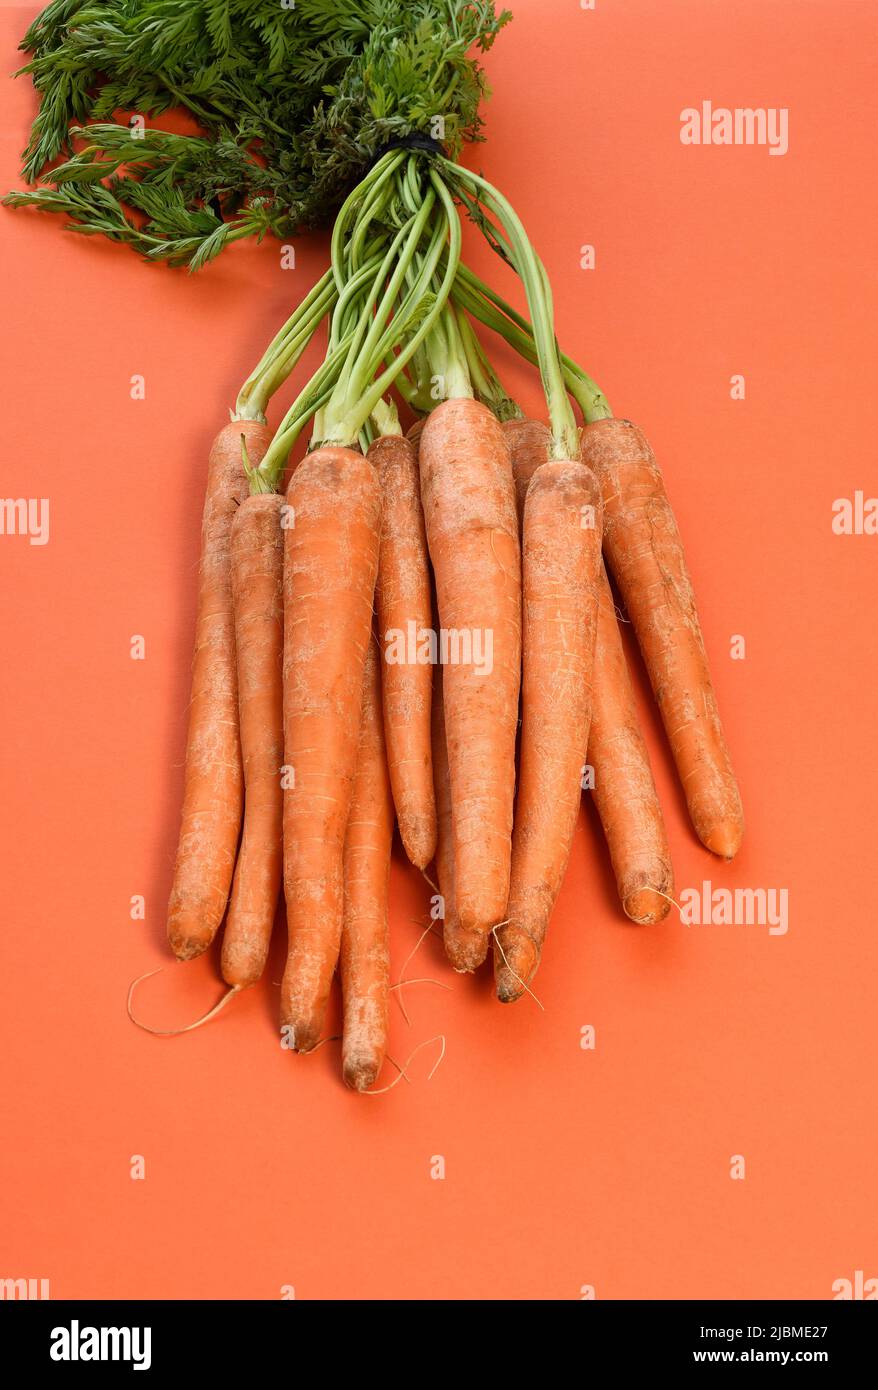 Un bouquet de carottes fraîches avec des tiges vertes Banque D'Images